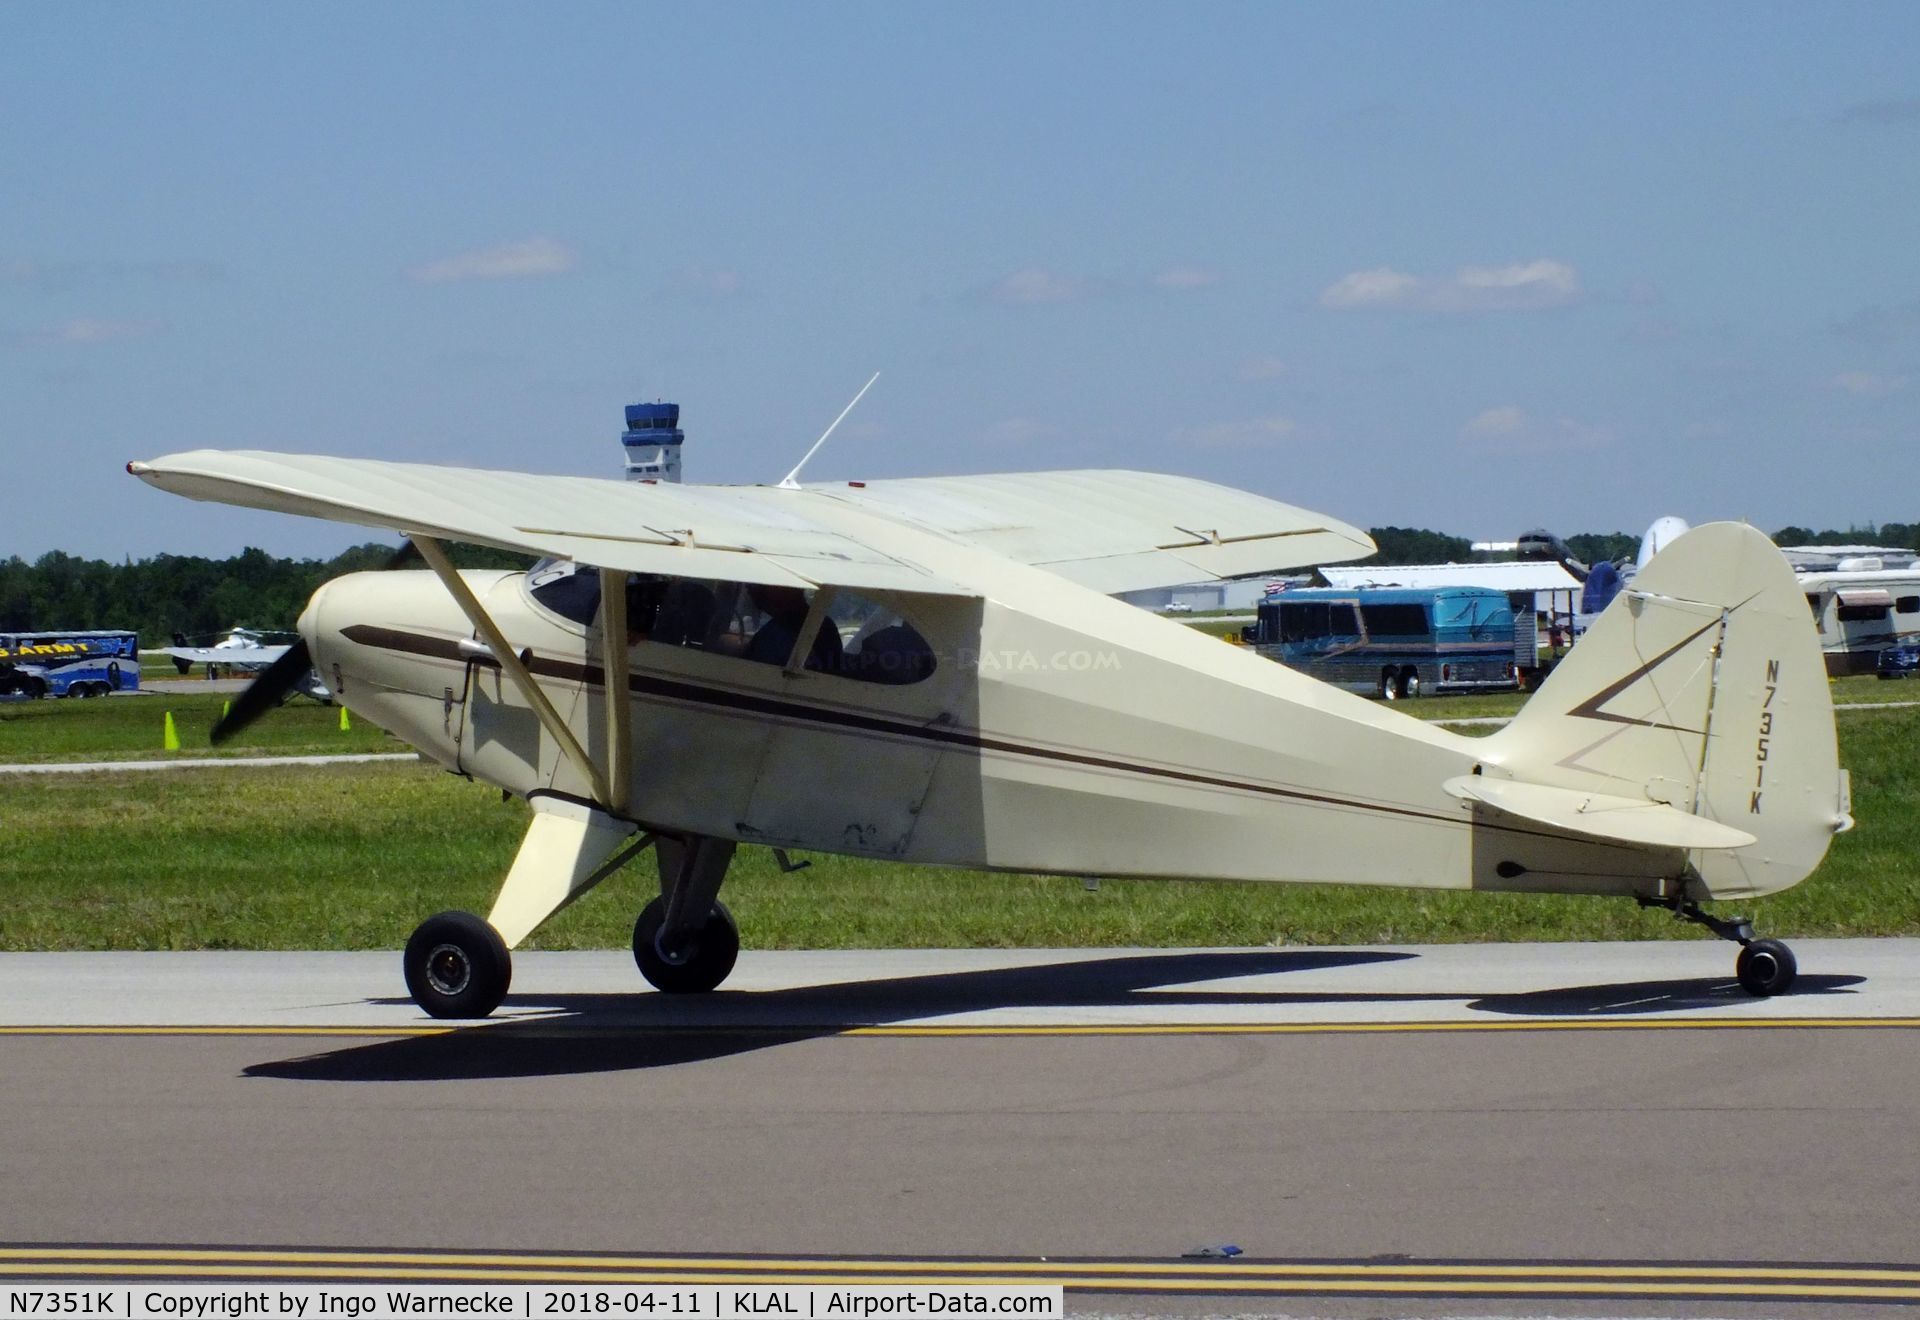 N7351K, 1950 Piper PA-20 Pacer C/N 20-259, Piper PA-20 Pacer at 2018 Sun 'n Fun, Lakeland FL